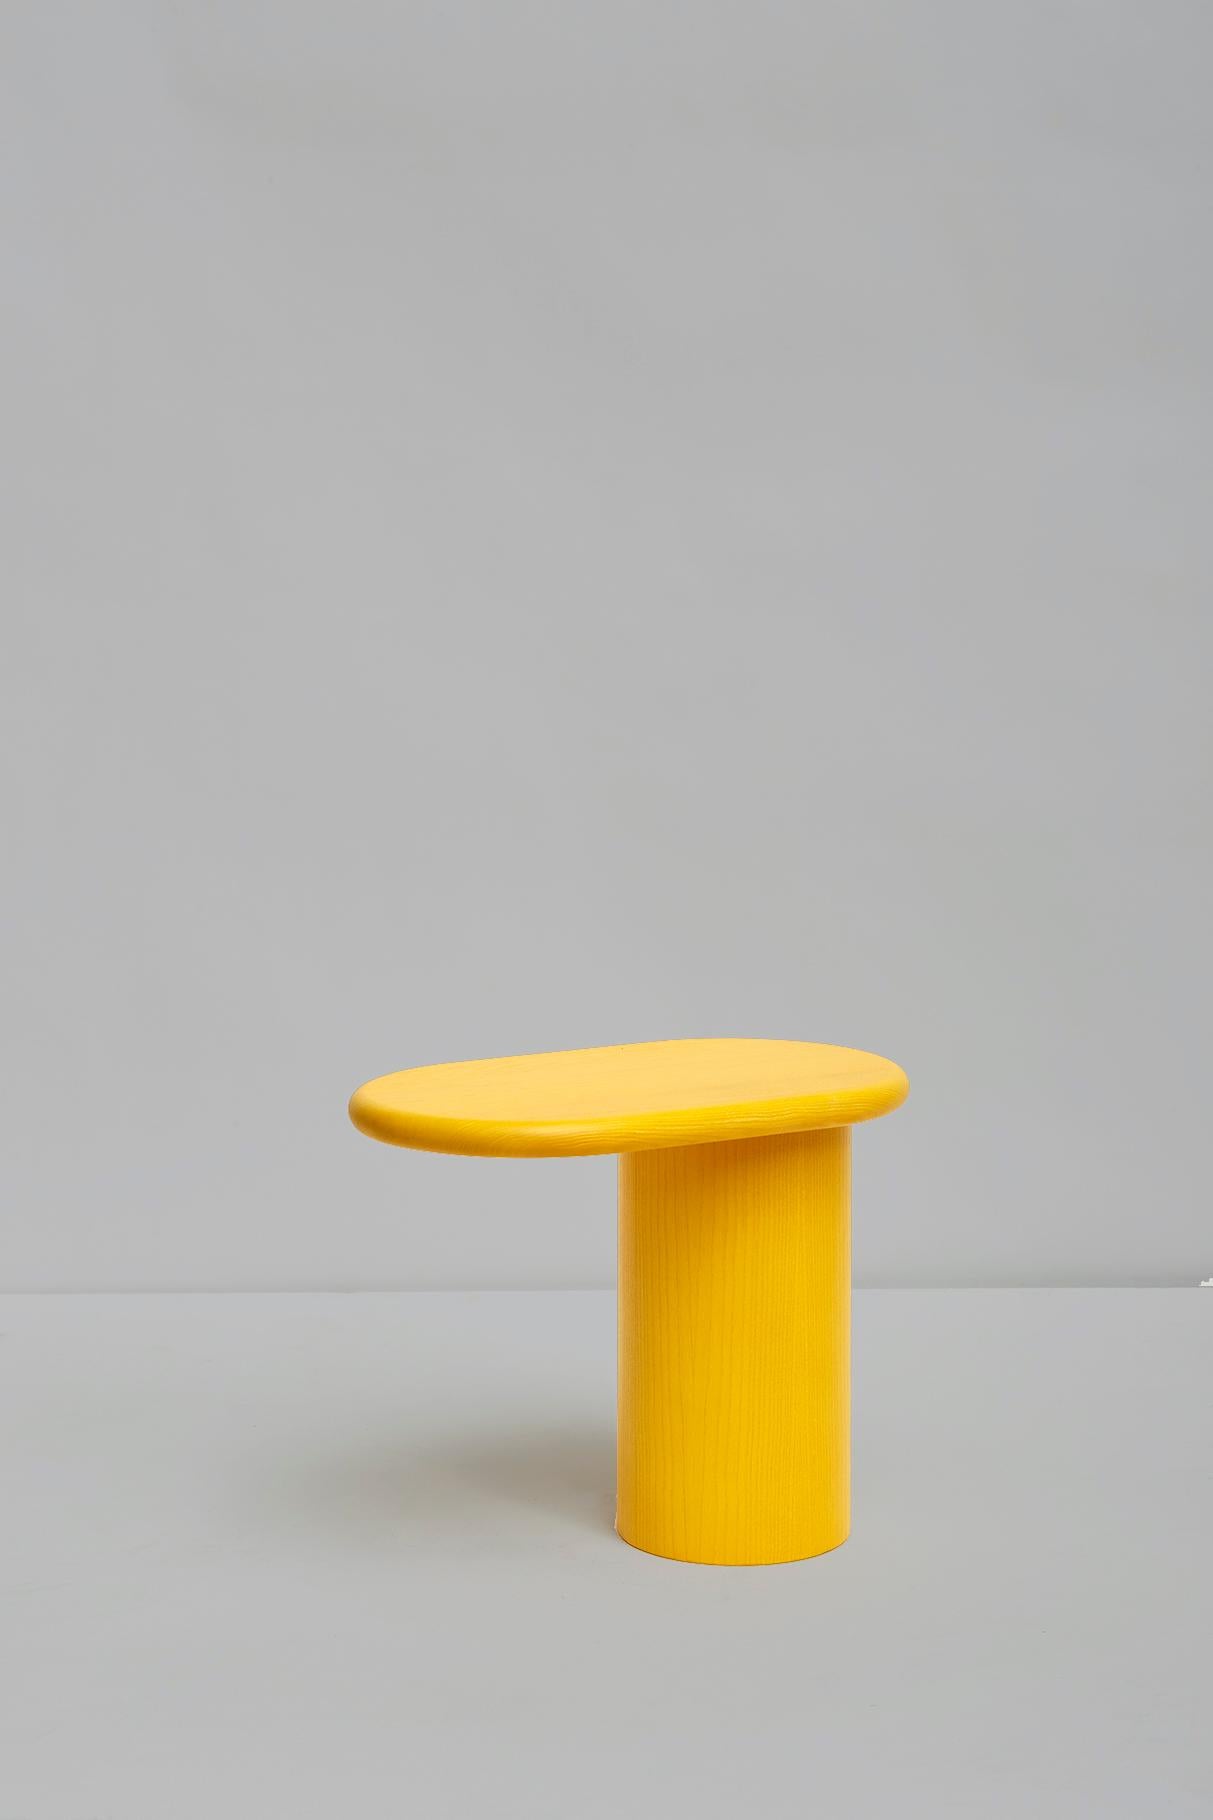 Freischwinger klein, Colorama Kollektion.
Entwurf von Matteo Zorzenoni, Produkt von Scapin Collezioni.

Cantilever ist ein kleiner Beistell- oder Couchtisch, der sich durch das optische Ungleichgewicht auszeichnet, das dadurch entsteht, dass seine